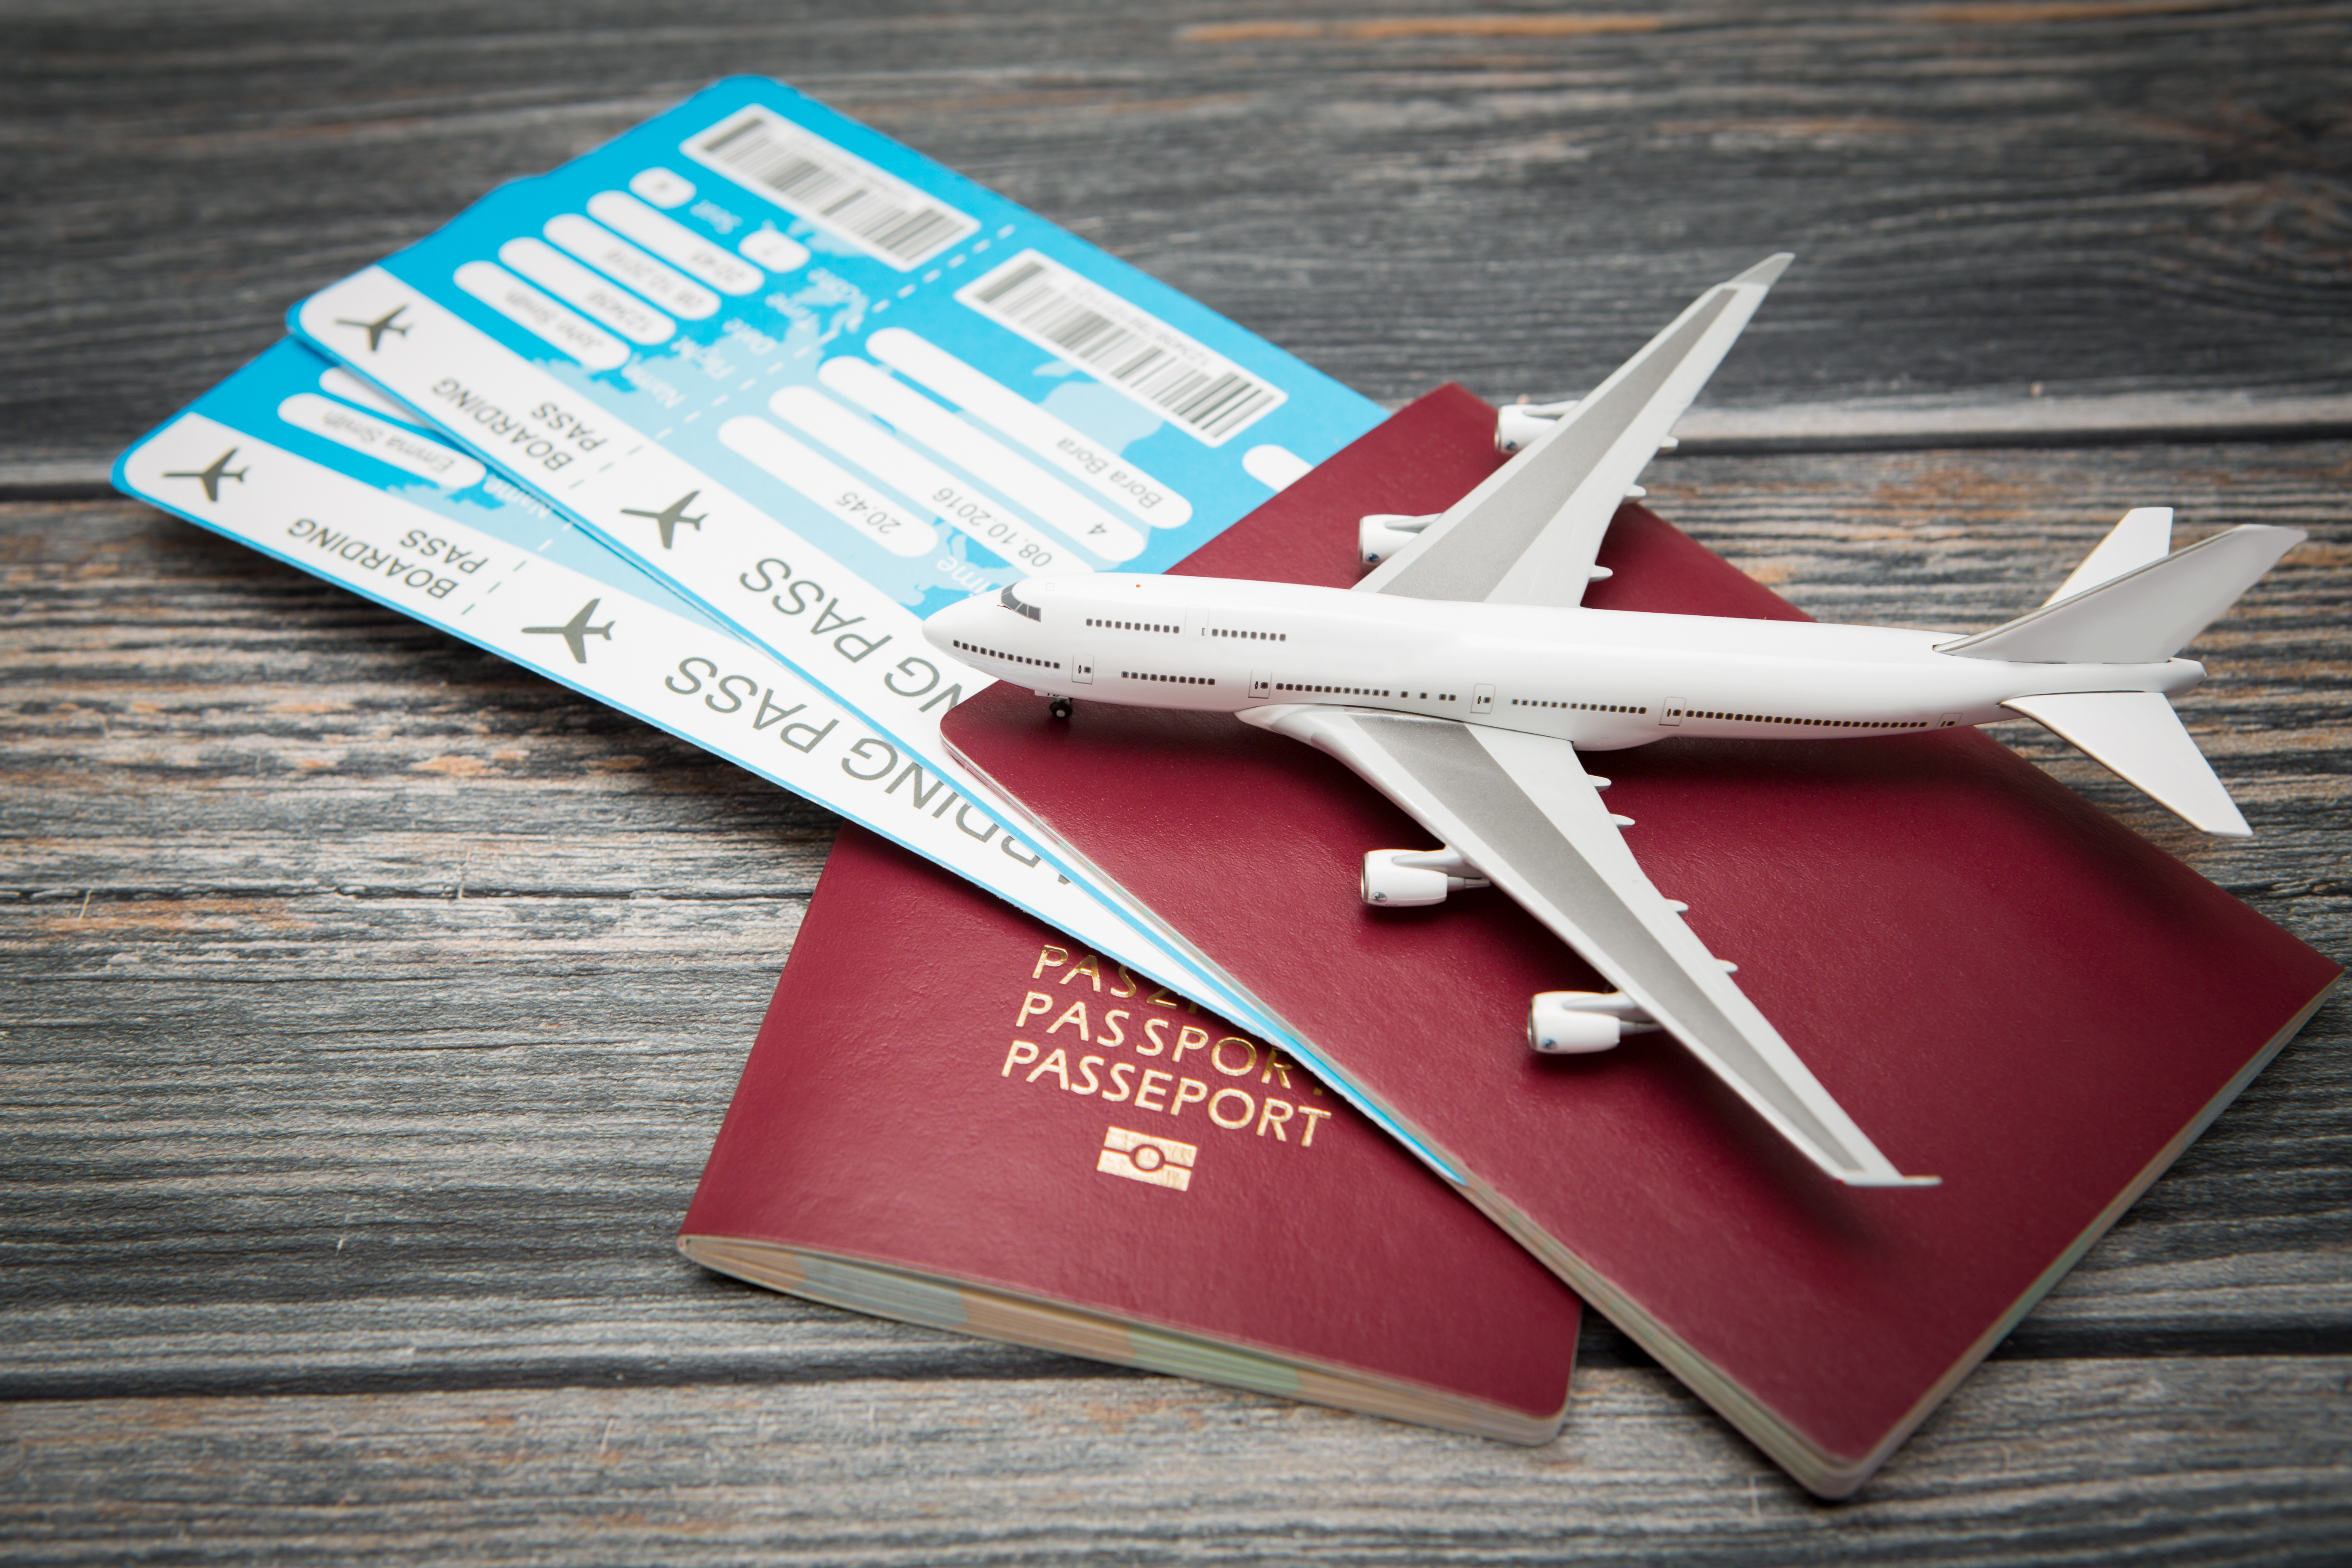     Une pétition pour la baisse des tarifs des billets d’avion pour les Antilles

